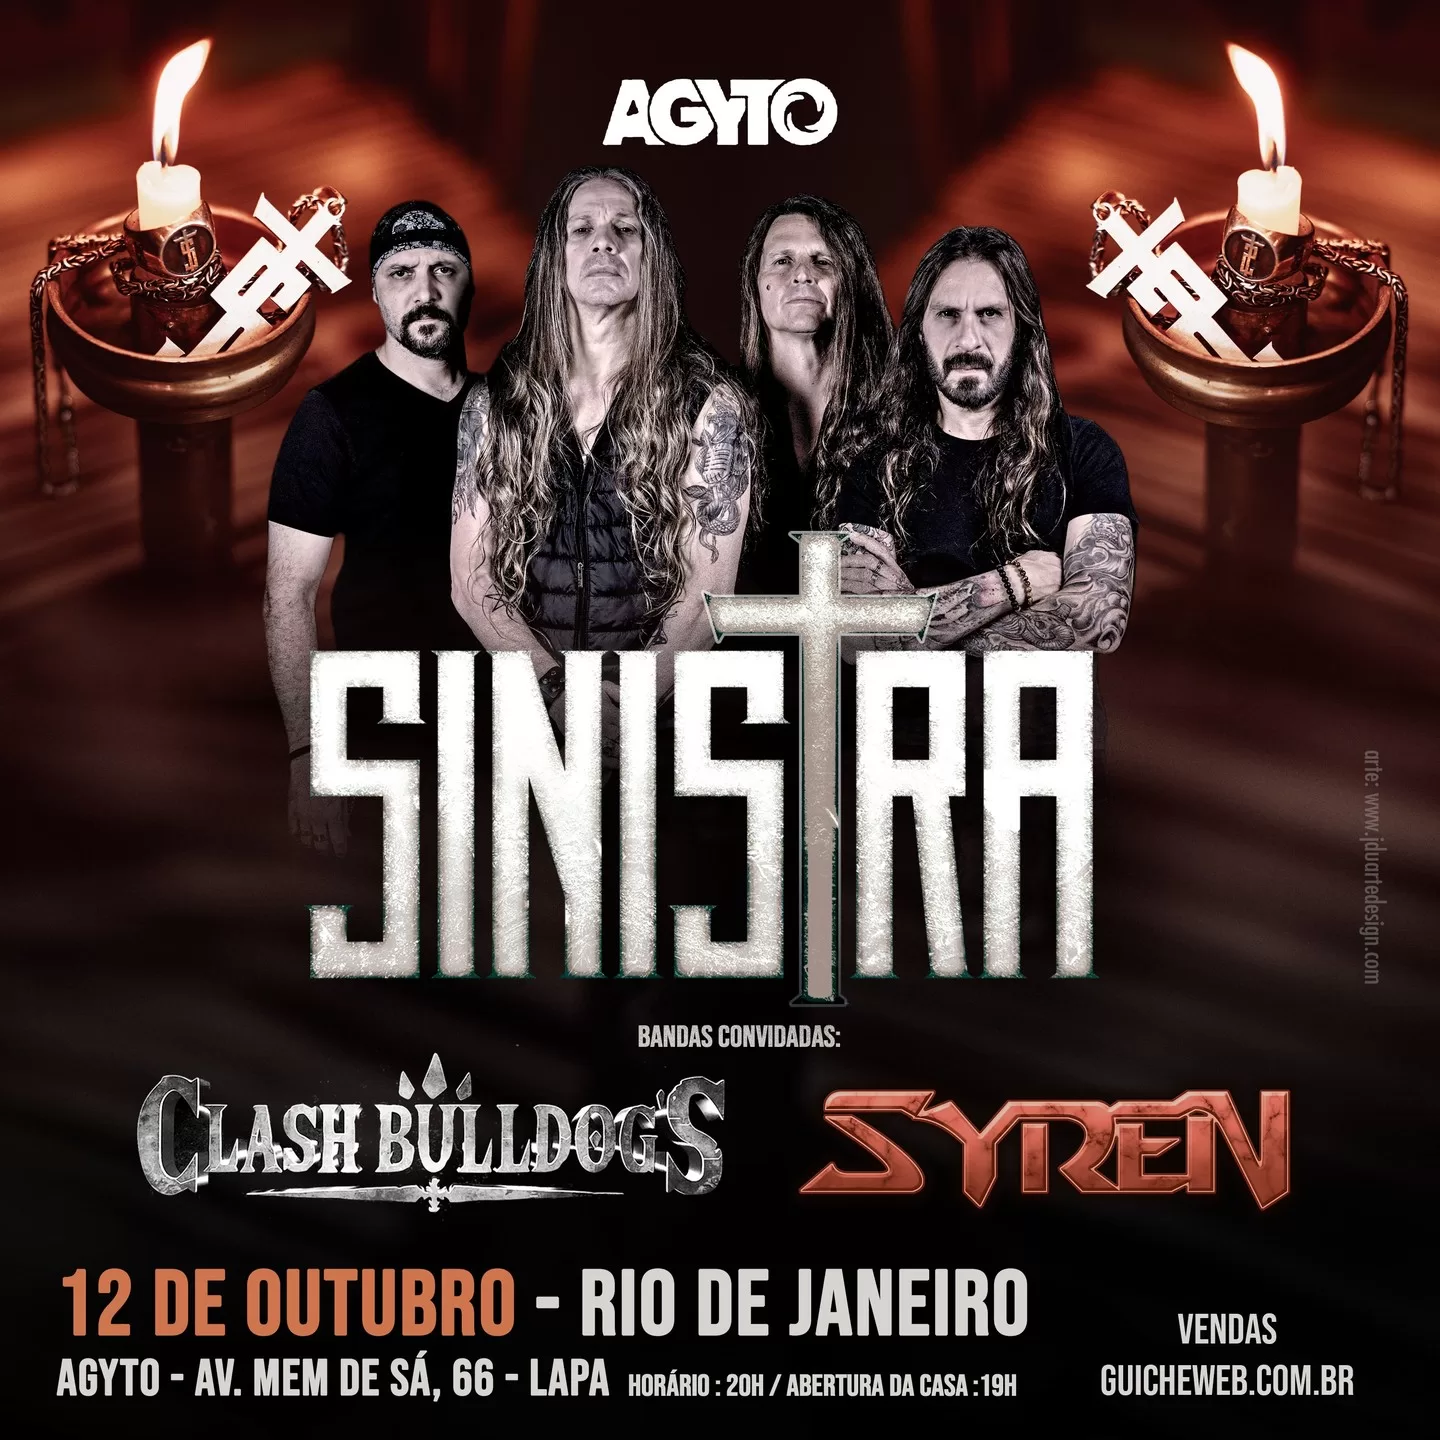 Sinistra anuncia show no Rio de Janeiro em Outubro com as bandas Clash Bulldog’s e Syren